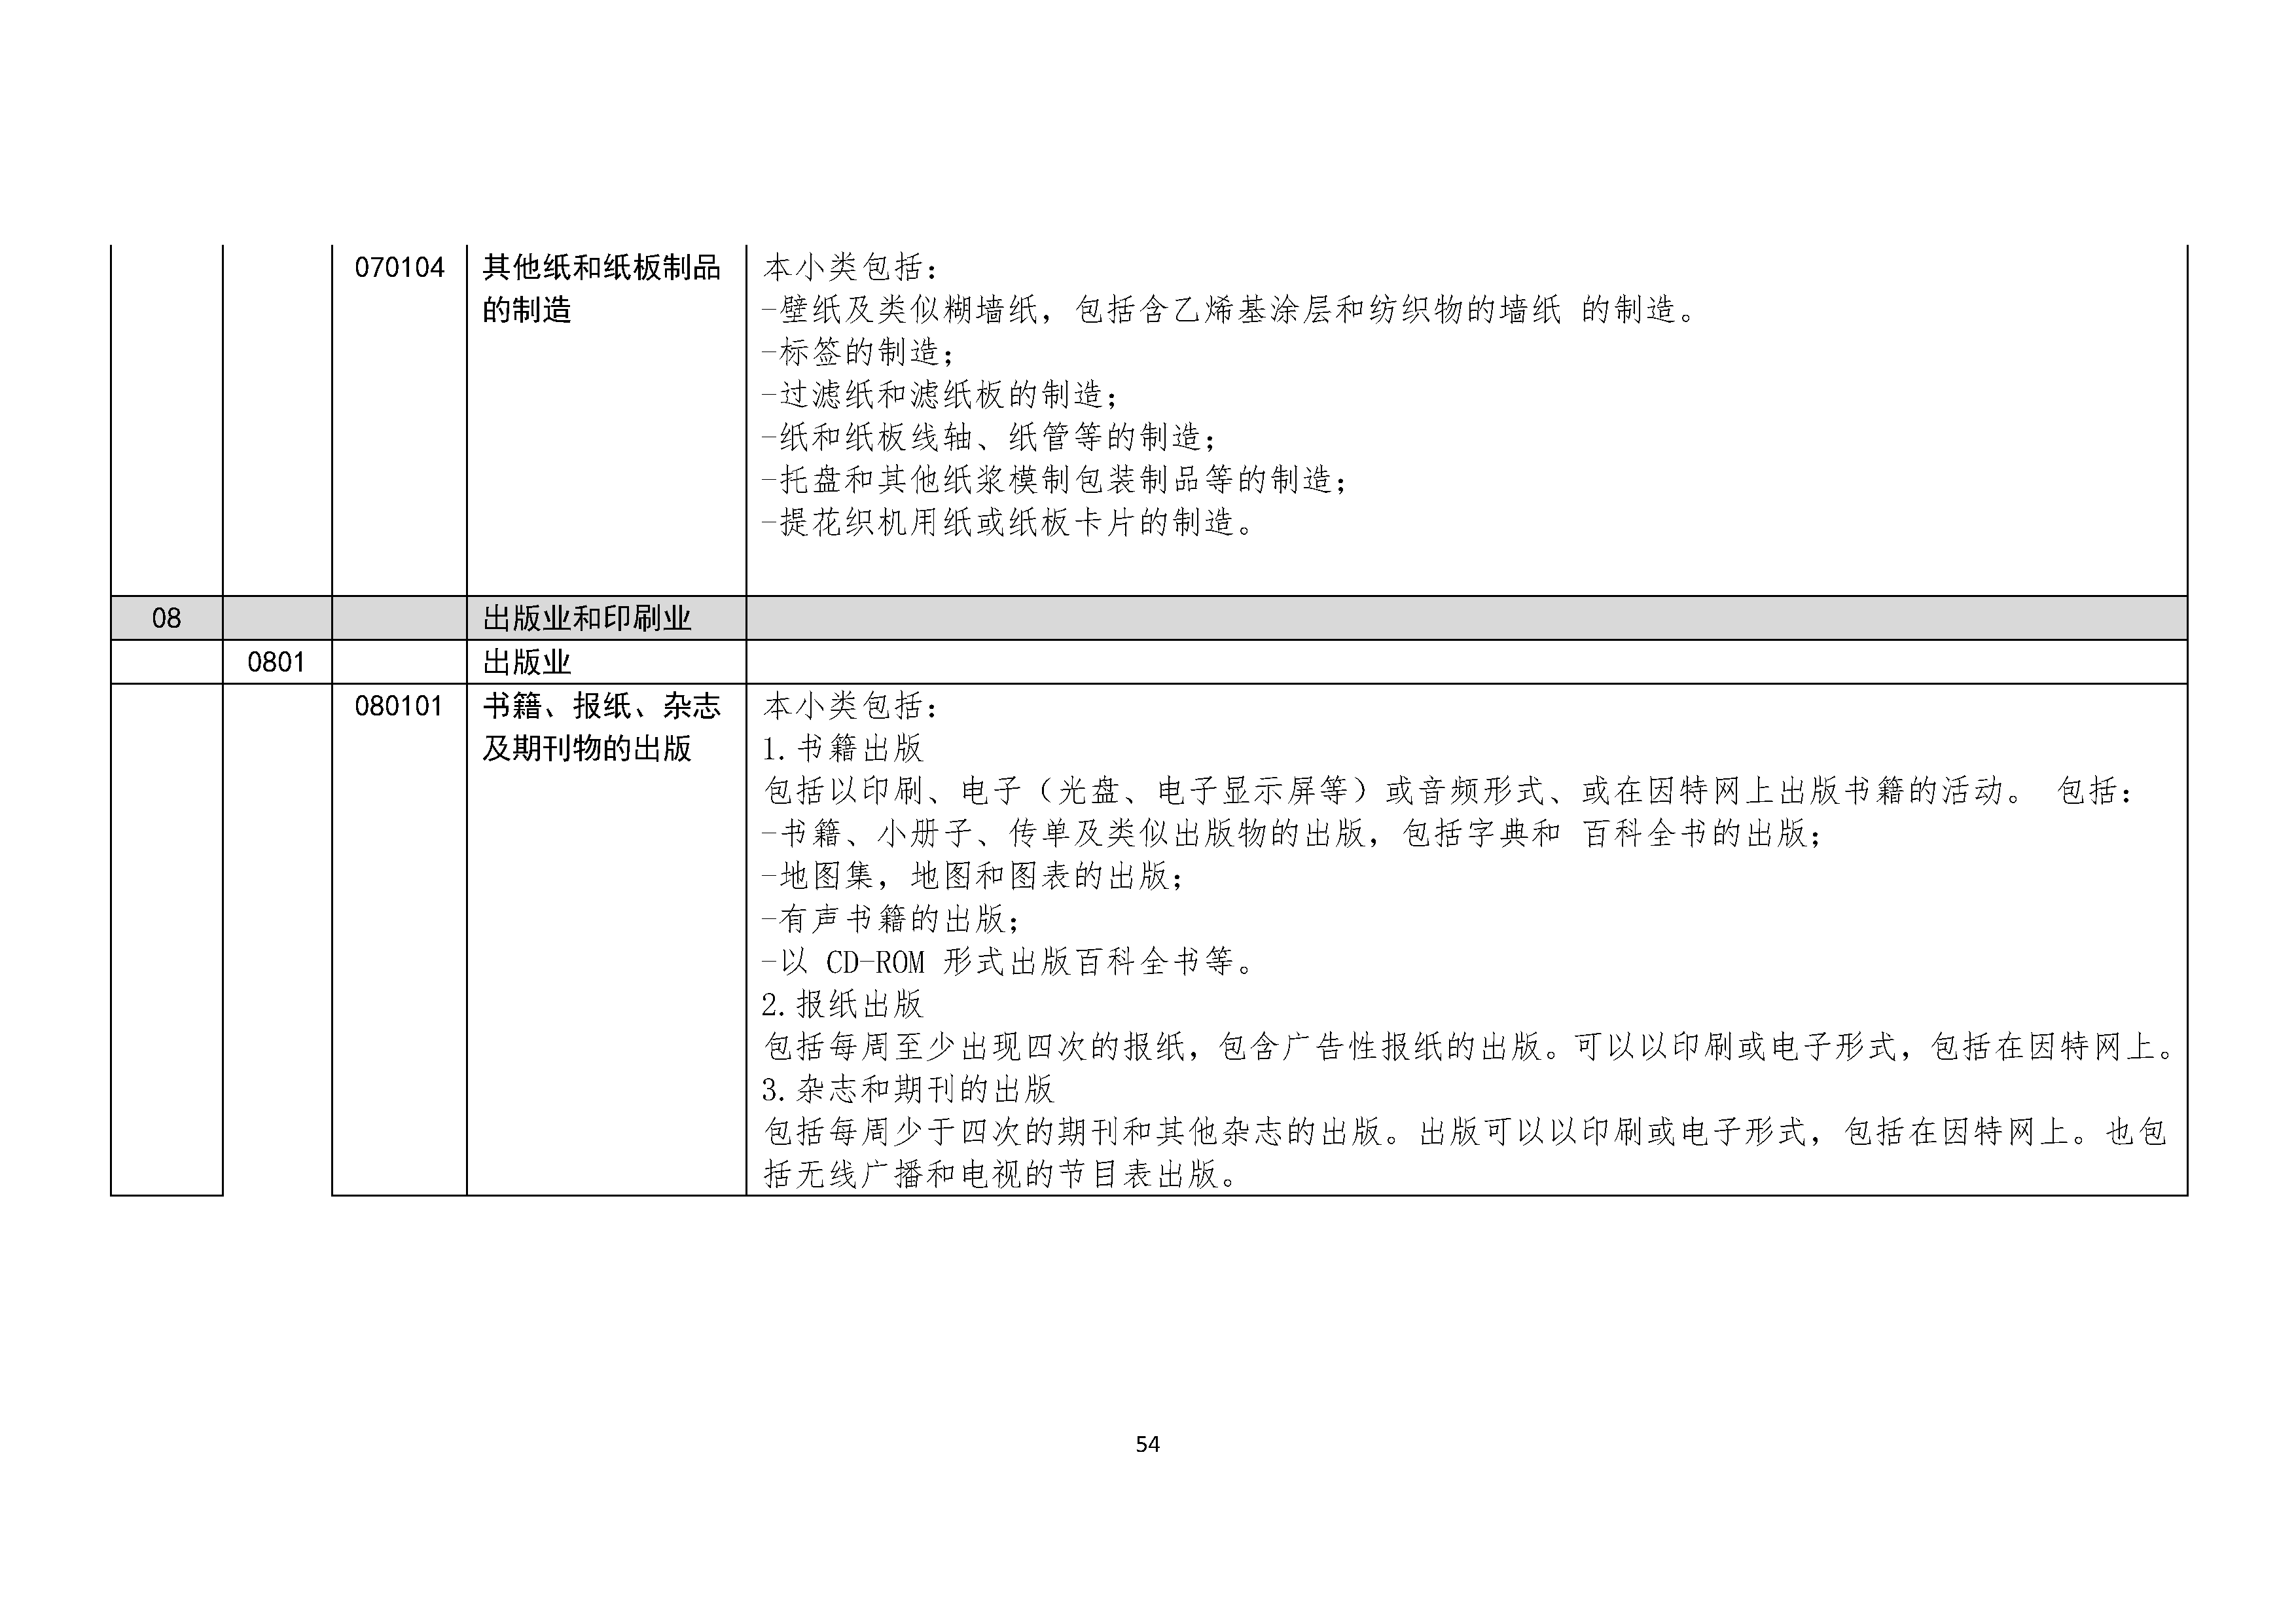 B.6《中国核能行业协会供应商评价供应商分类及产品专业范围划分规定》_页面_055.png